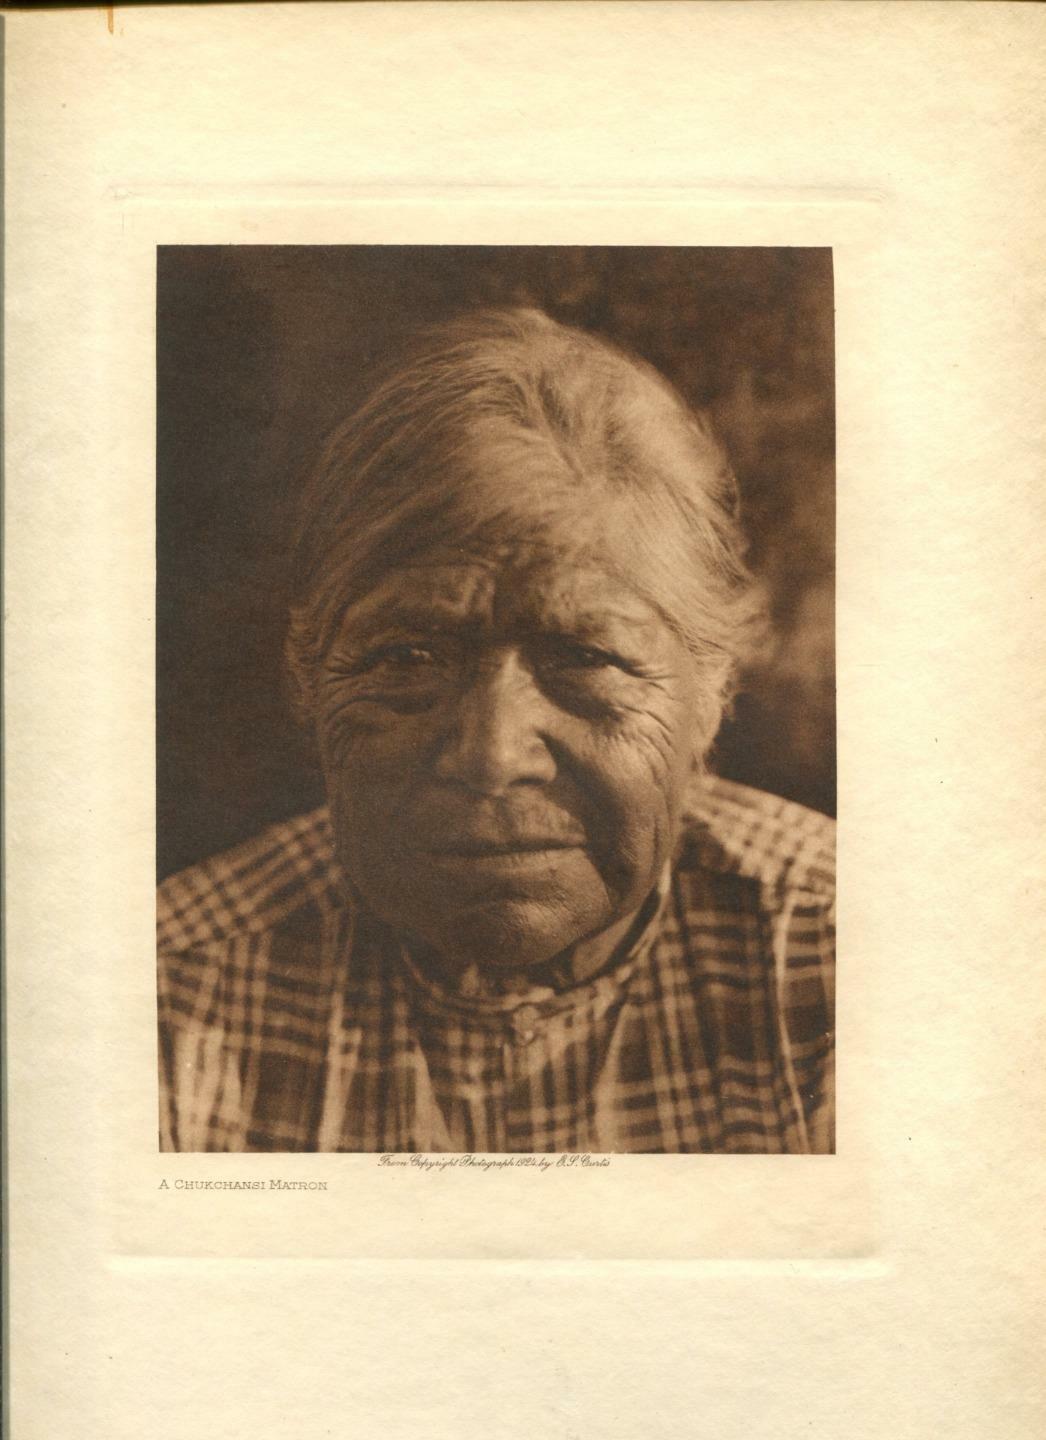 1924 Original Photogravure | Chuckchansi Matron | Edward Curtis | 5 1/2 x 7 1/2